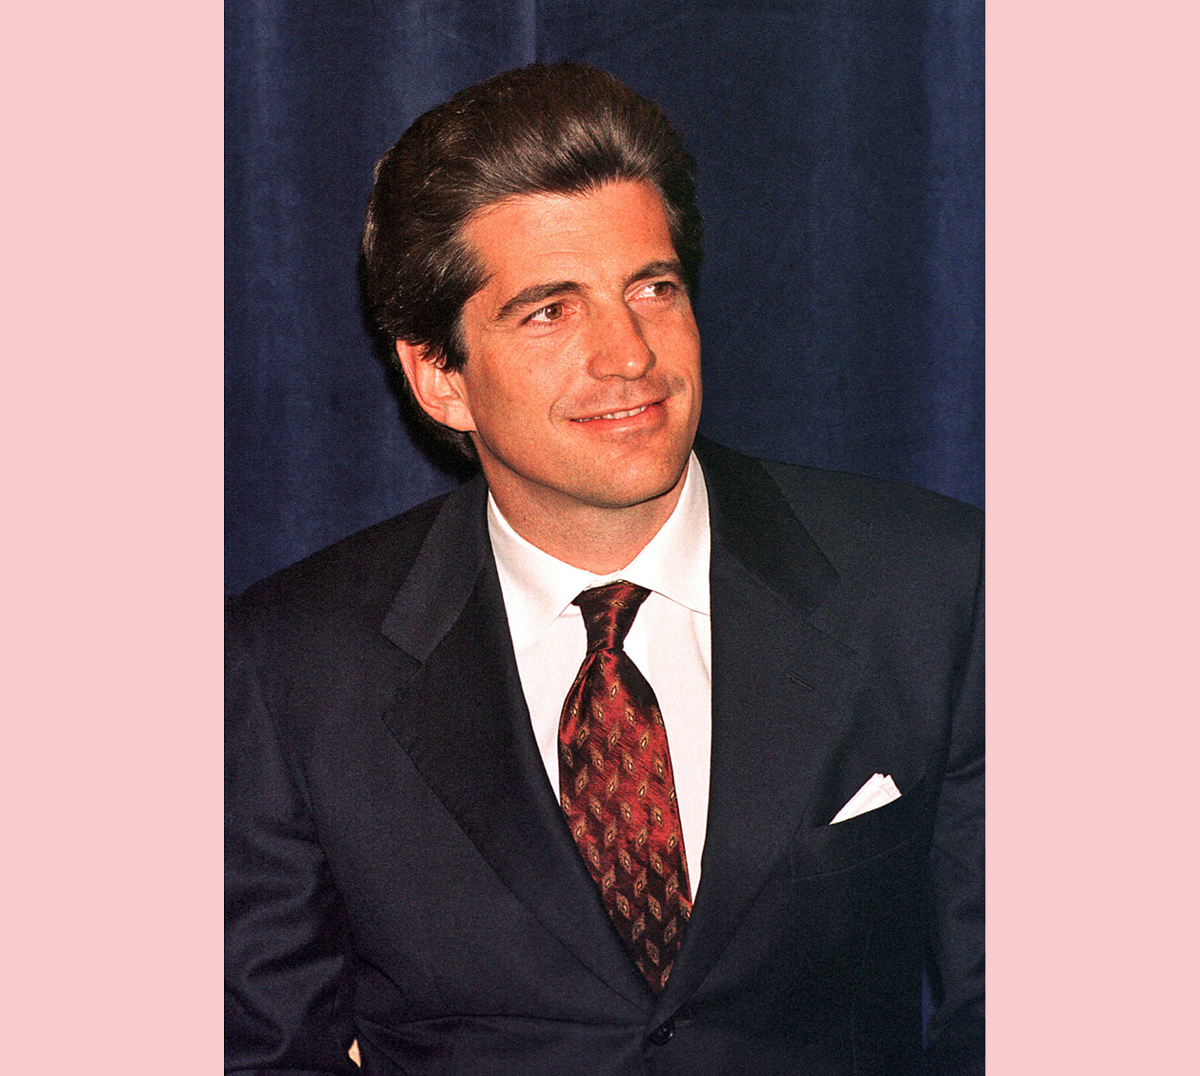 John F Kennedy Jr in 1999